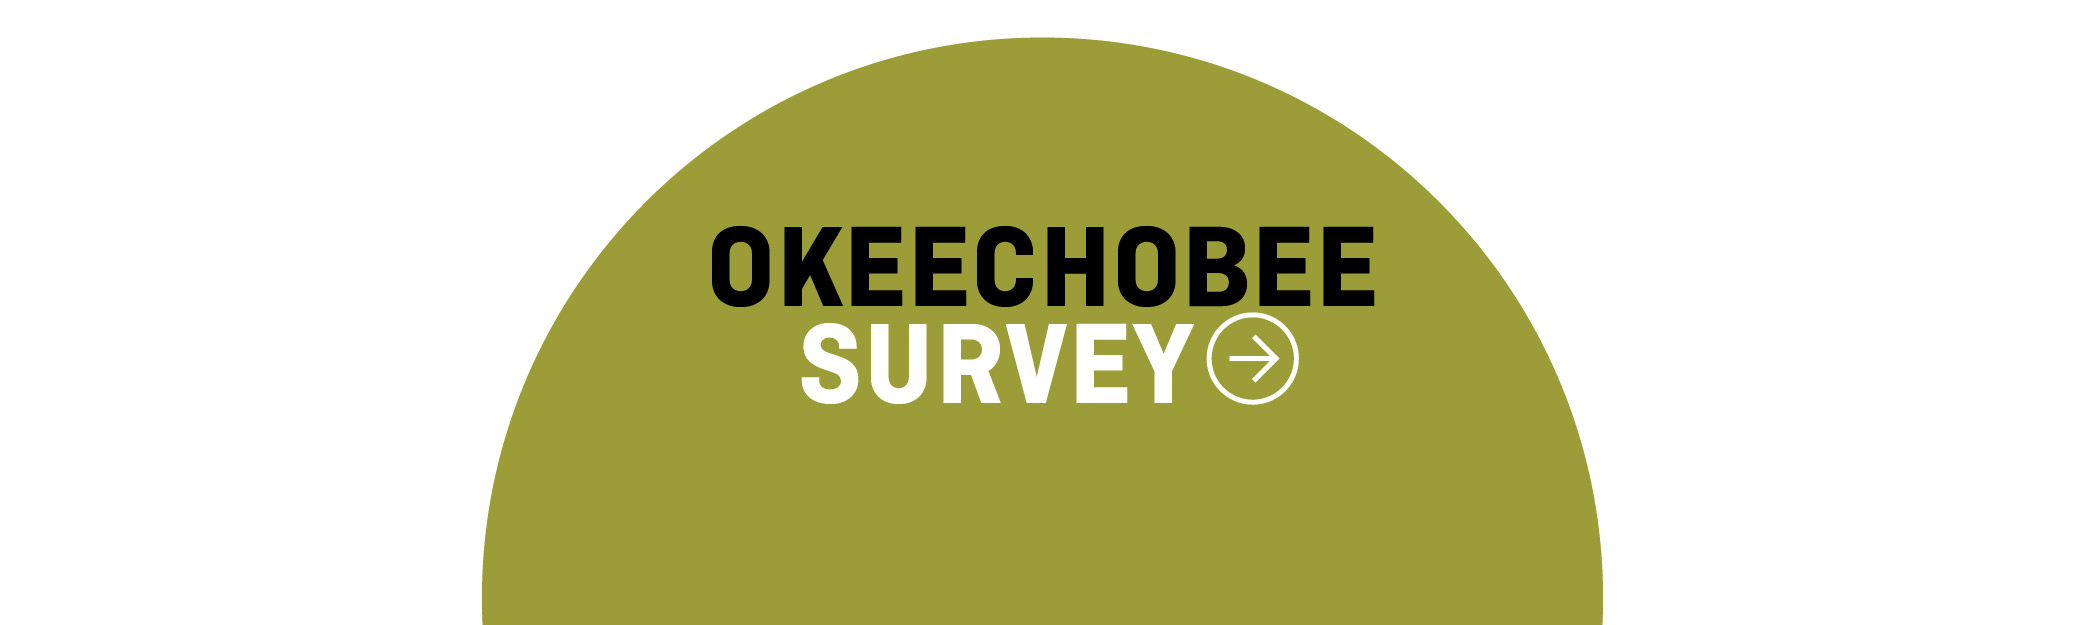 Okeechobee Survey